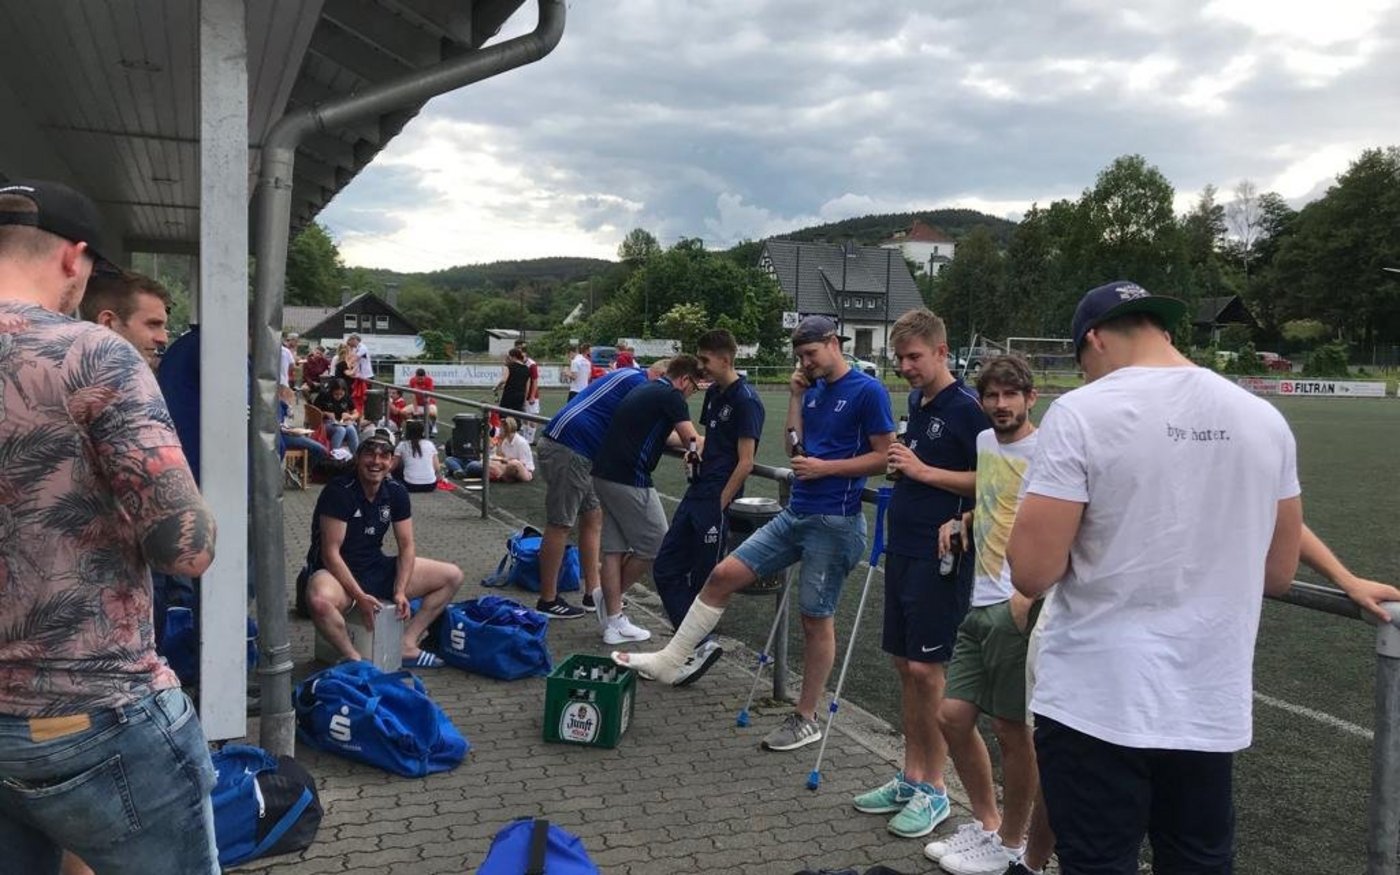 Nach dem Spiel gegen Morsbach ging es für unsere Erste Herren schnurstracks in die Vereinskneipe Haus Kranenberg, um den Saisonabschluss zu feiern